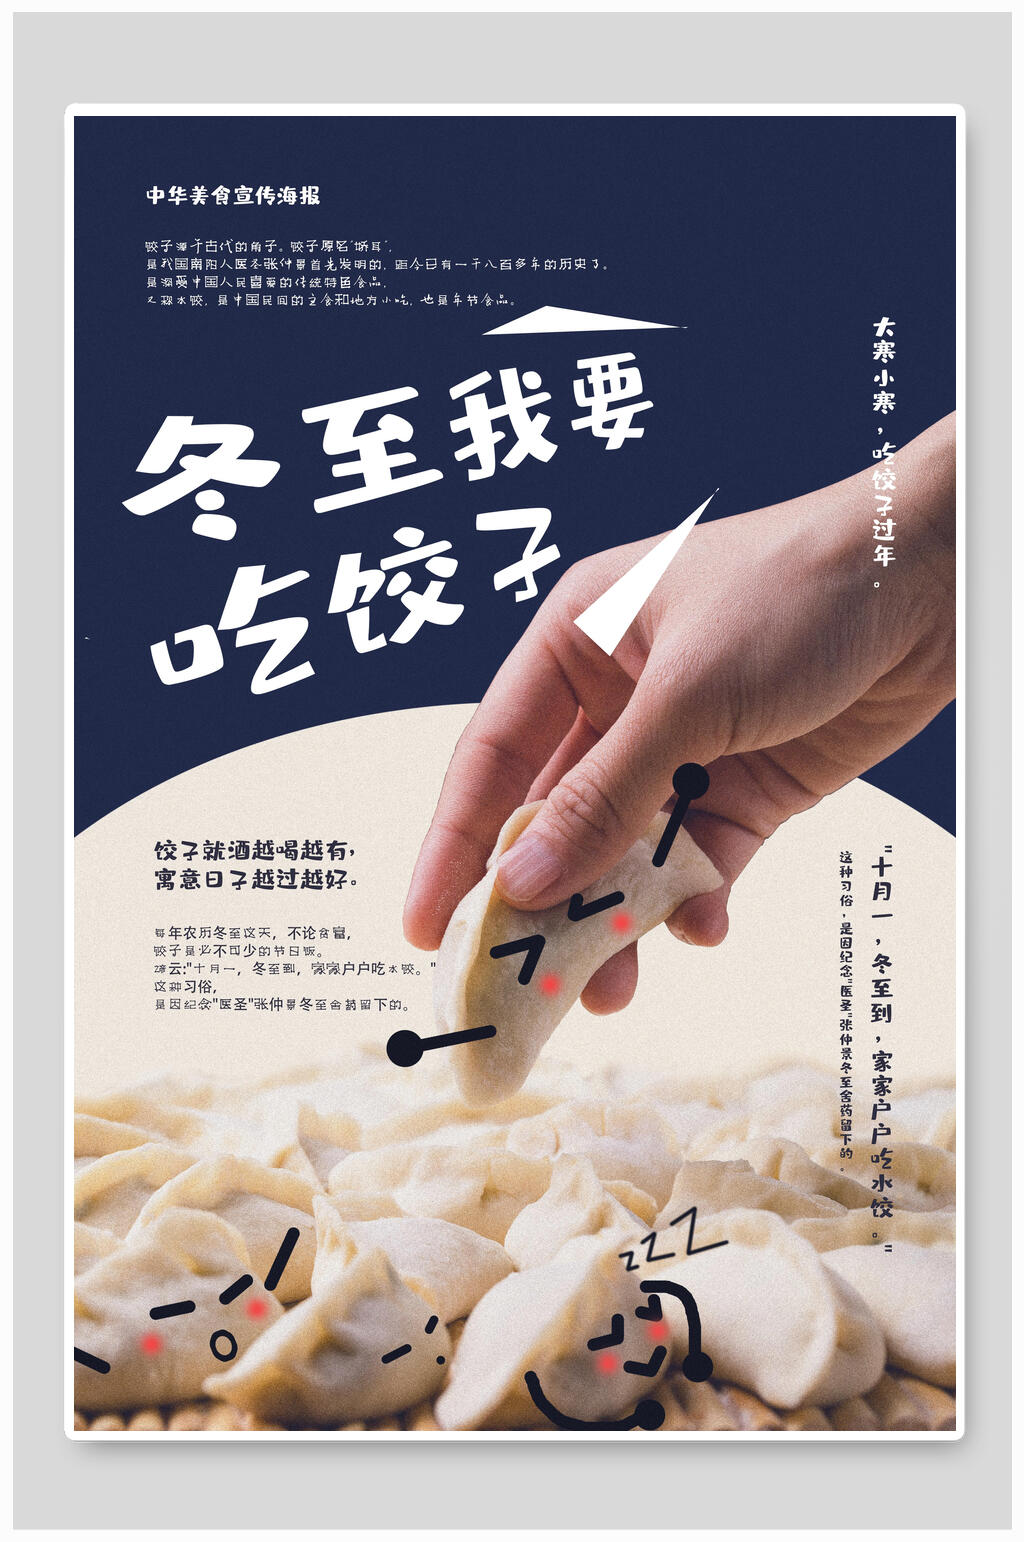 饺子宣传文案图片